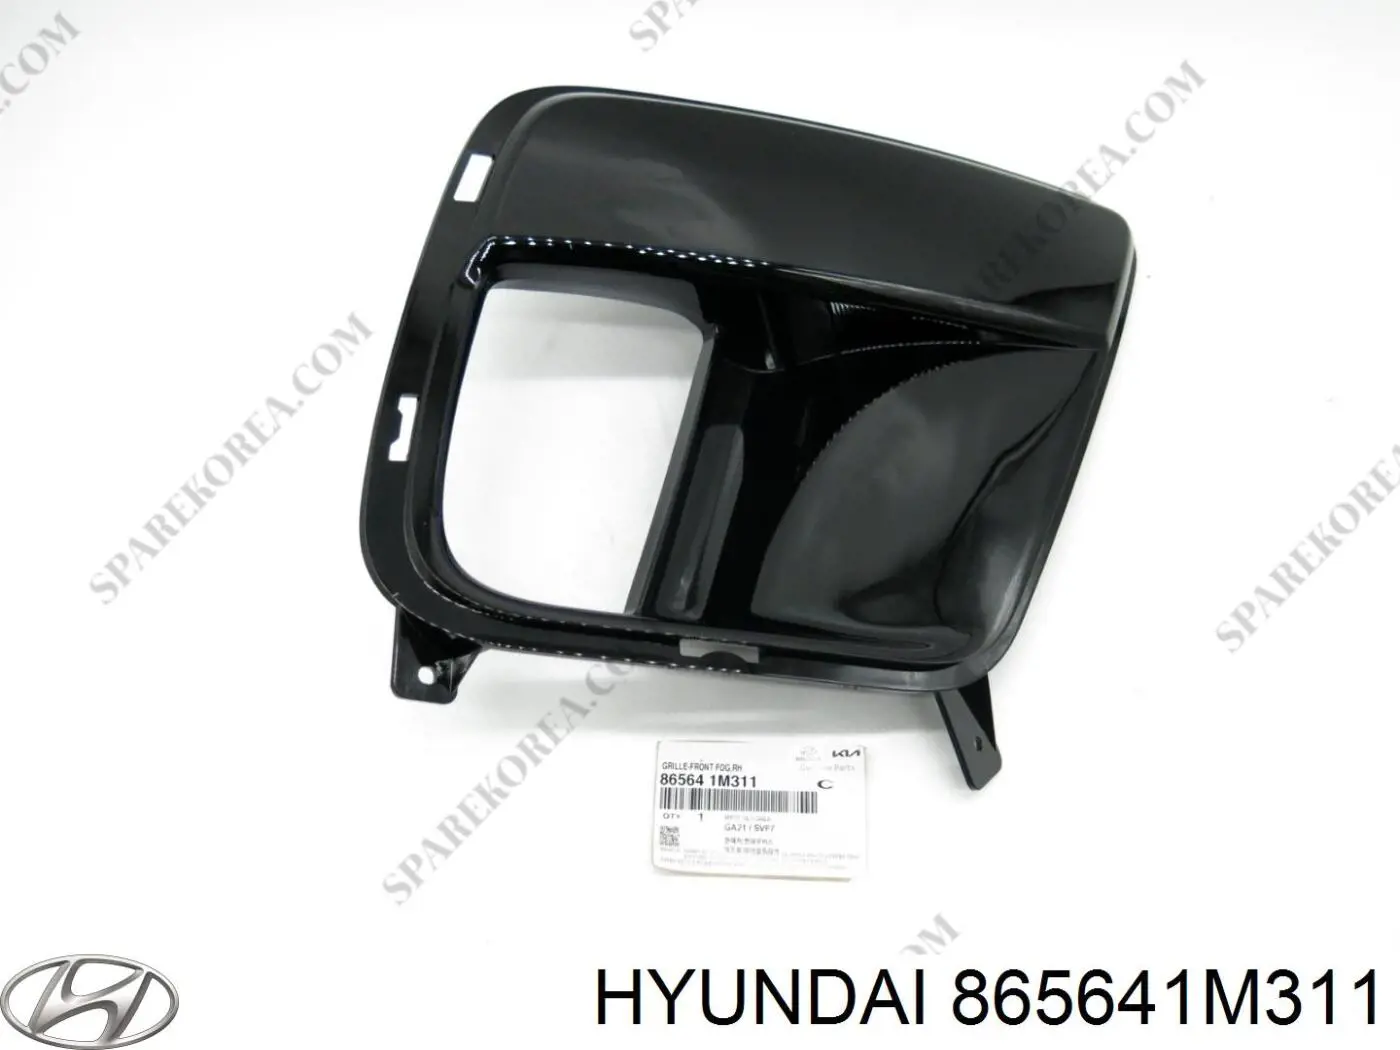 865641m311 Hyundai/Kia ободок (окантовка фары противотуманной правой)